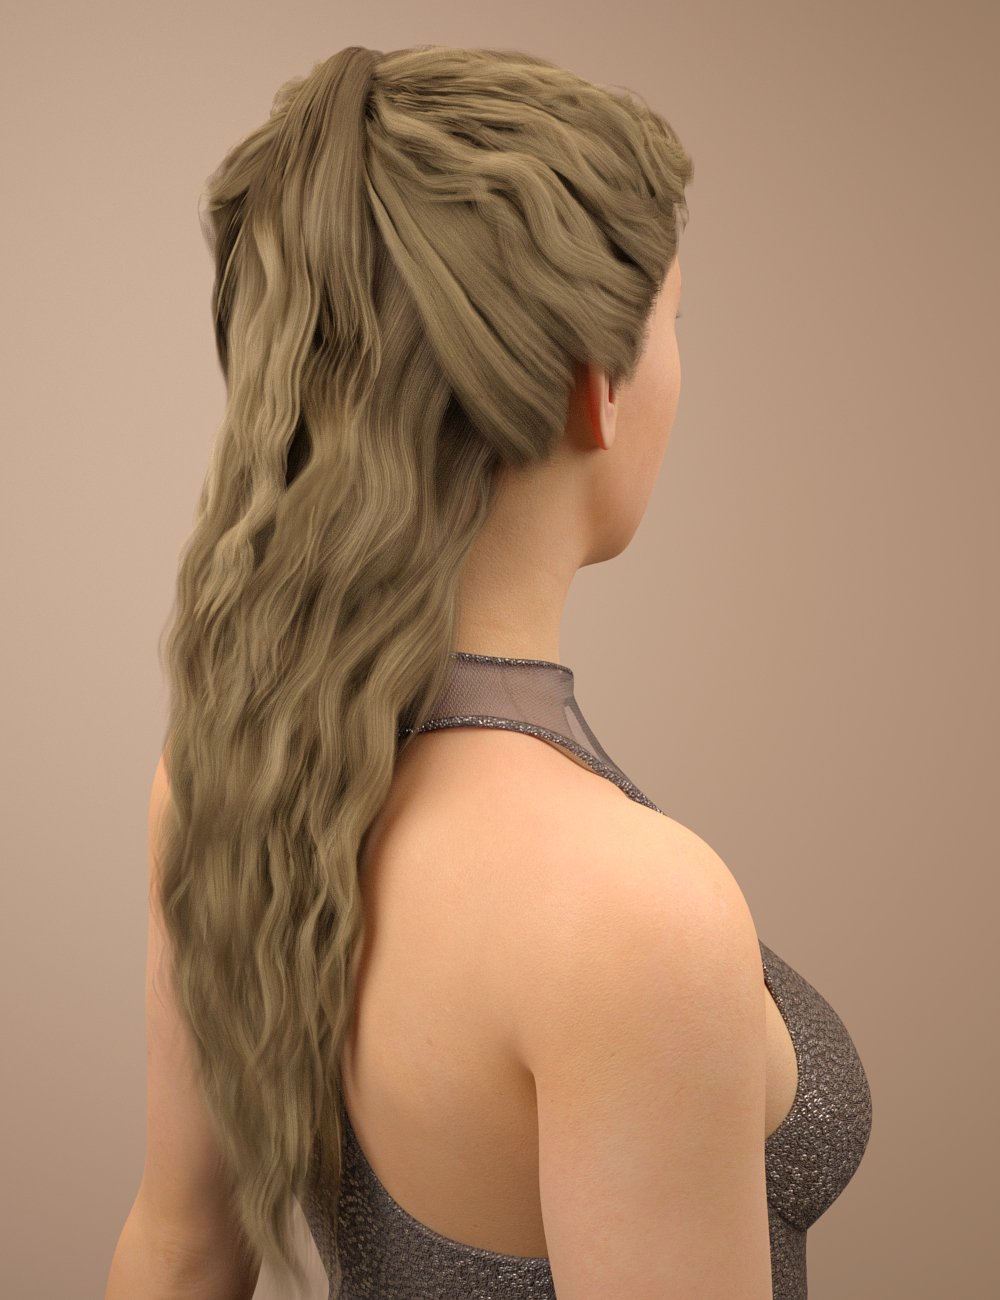 Brielle Hair for Genesis 8 Female(s) by: Toyen, 3D Models by Daz 3D